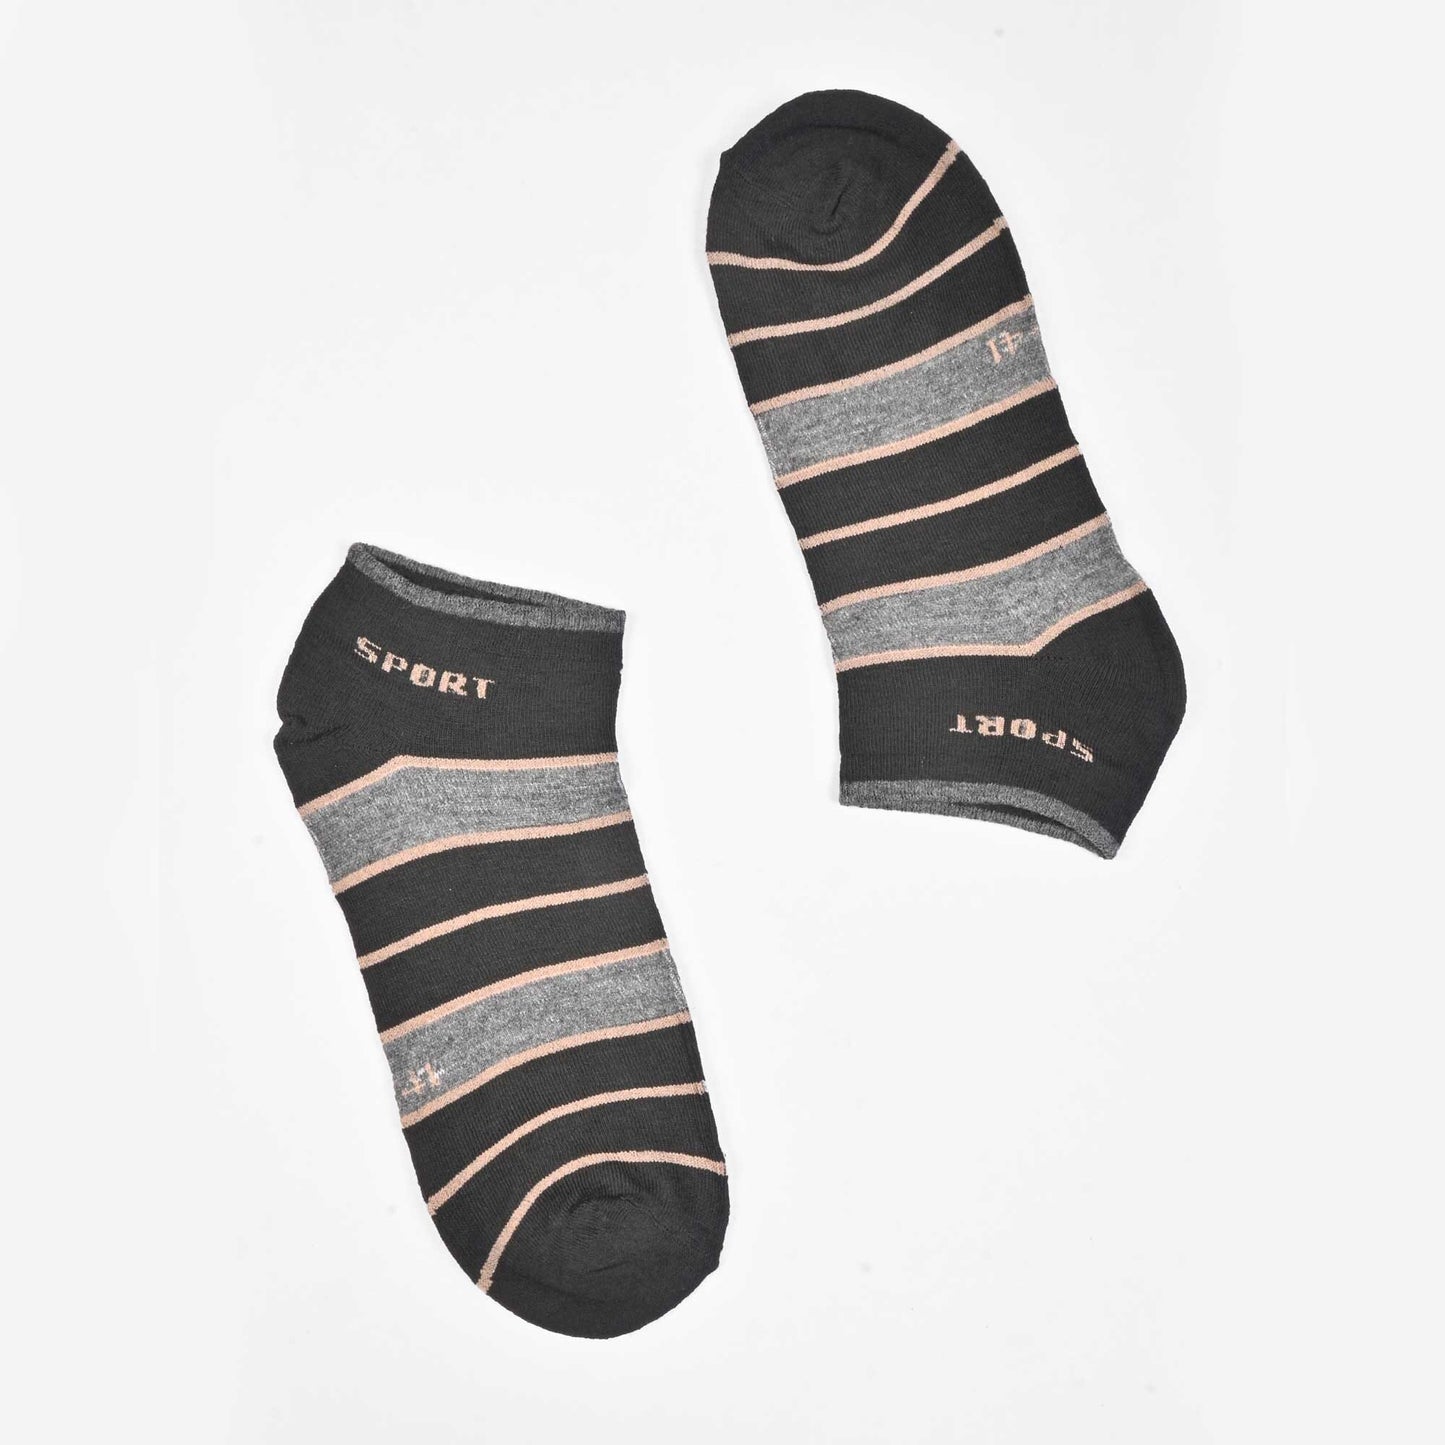 Leija Men's Sport Anklet Socks Socks SRL D4 EUR 38-43 